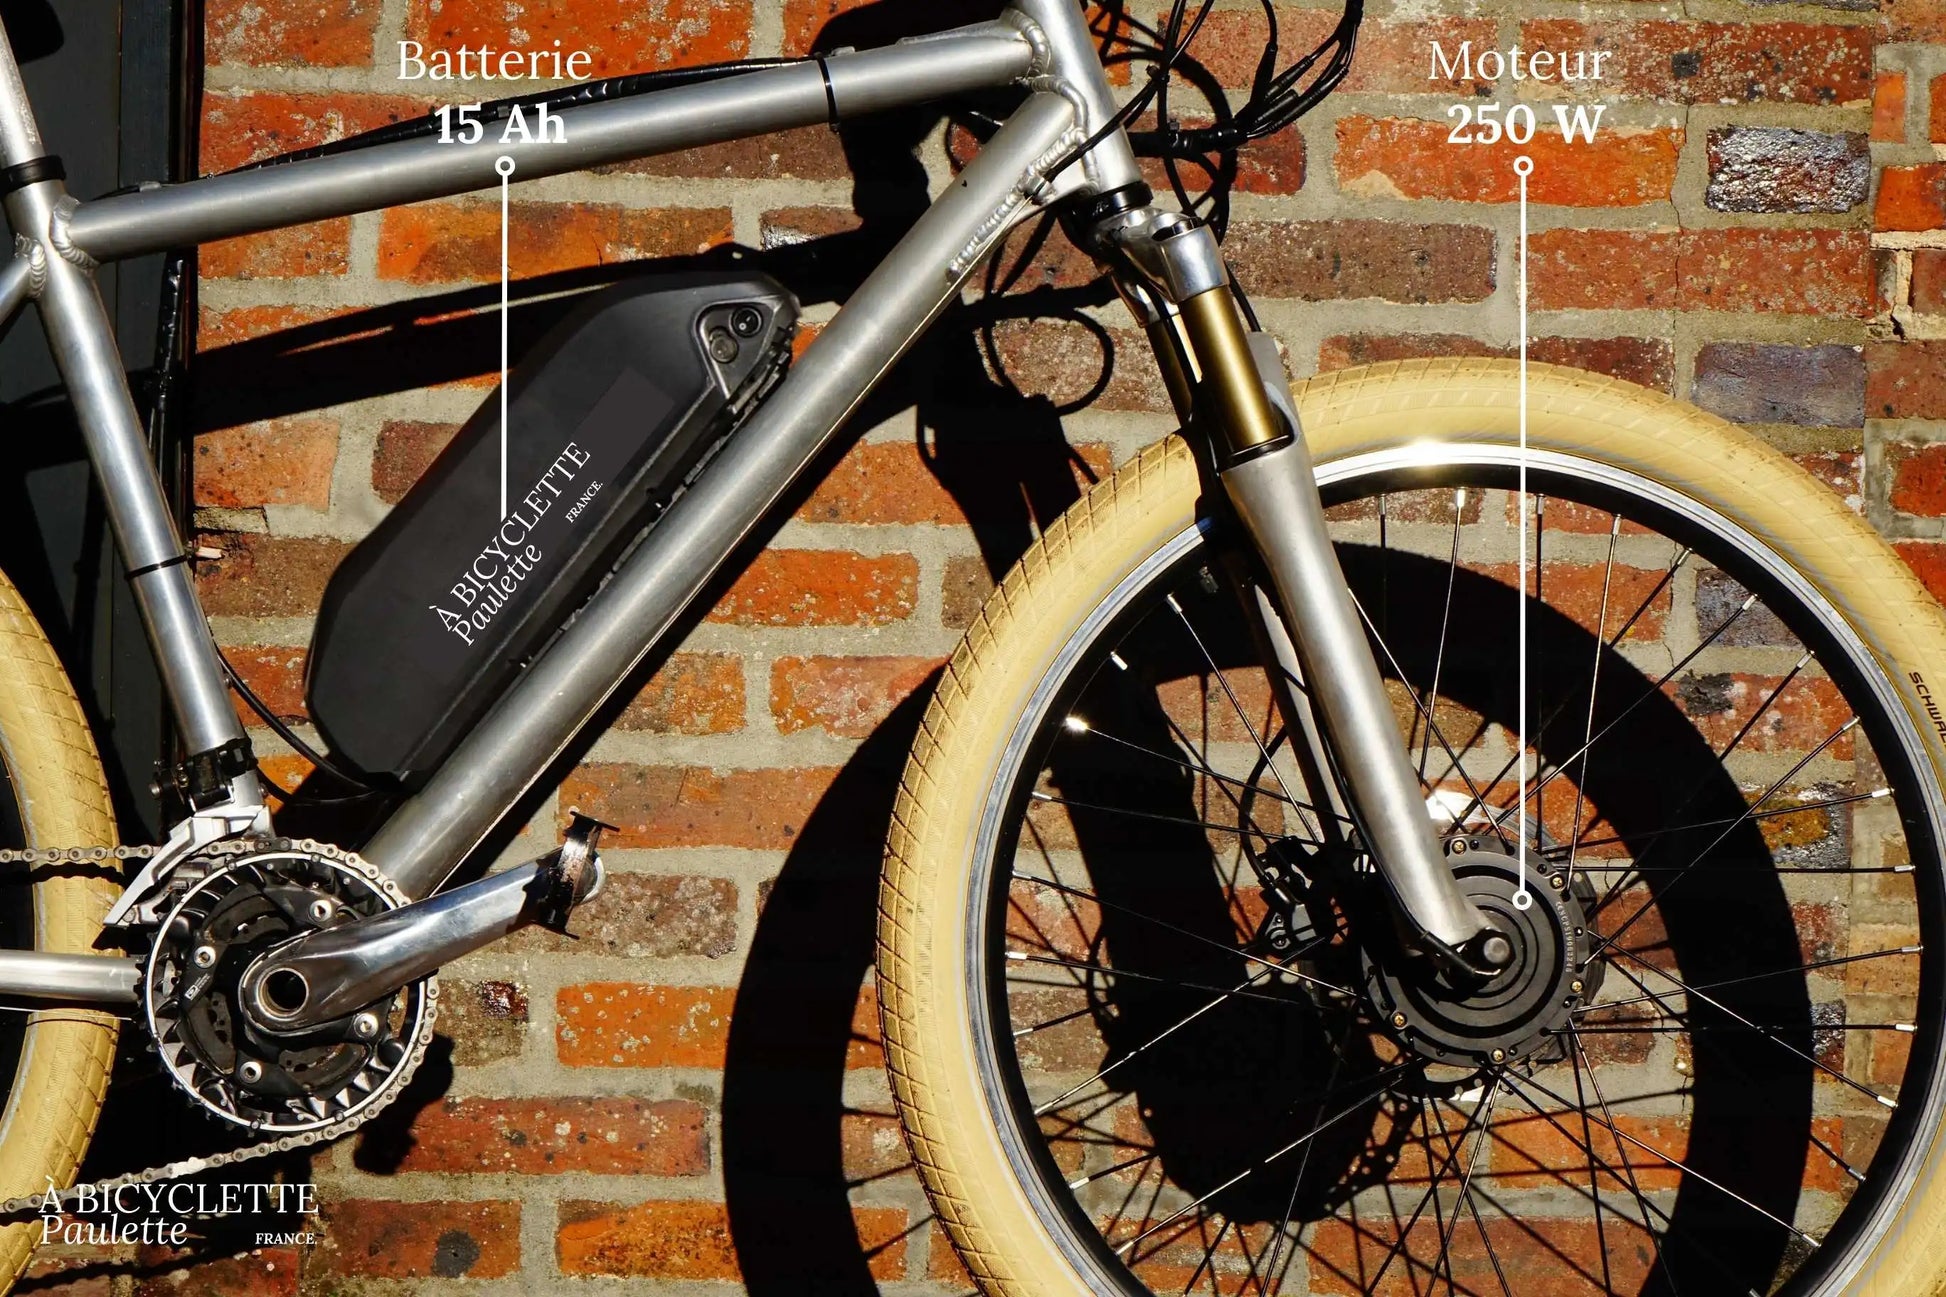 kit électrique pour vélo 250 W - à bicyclette Paulette